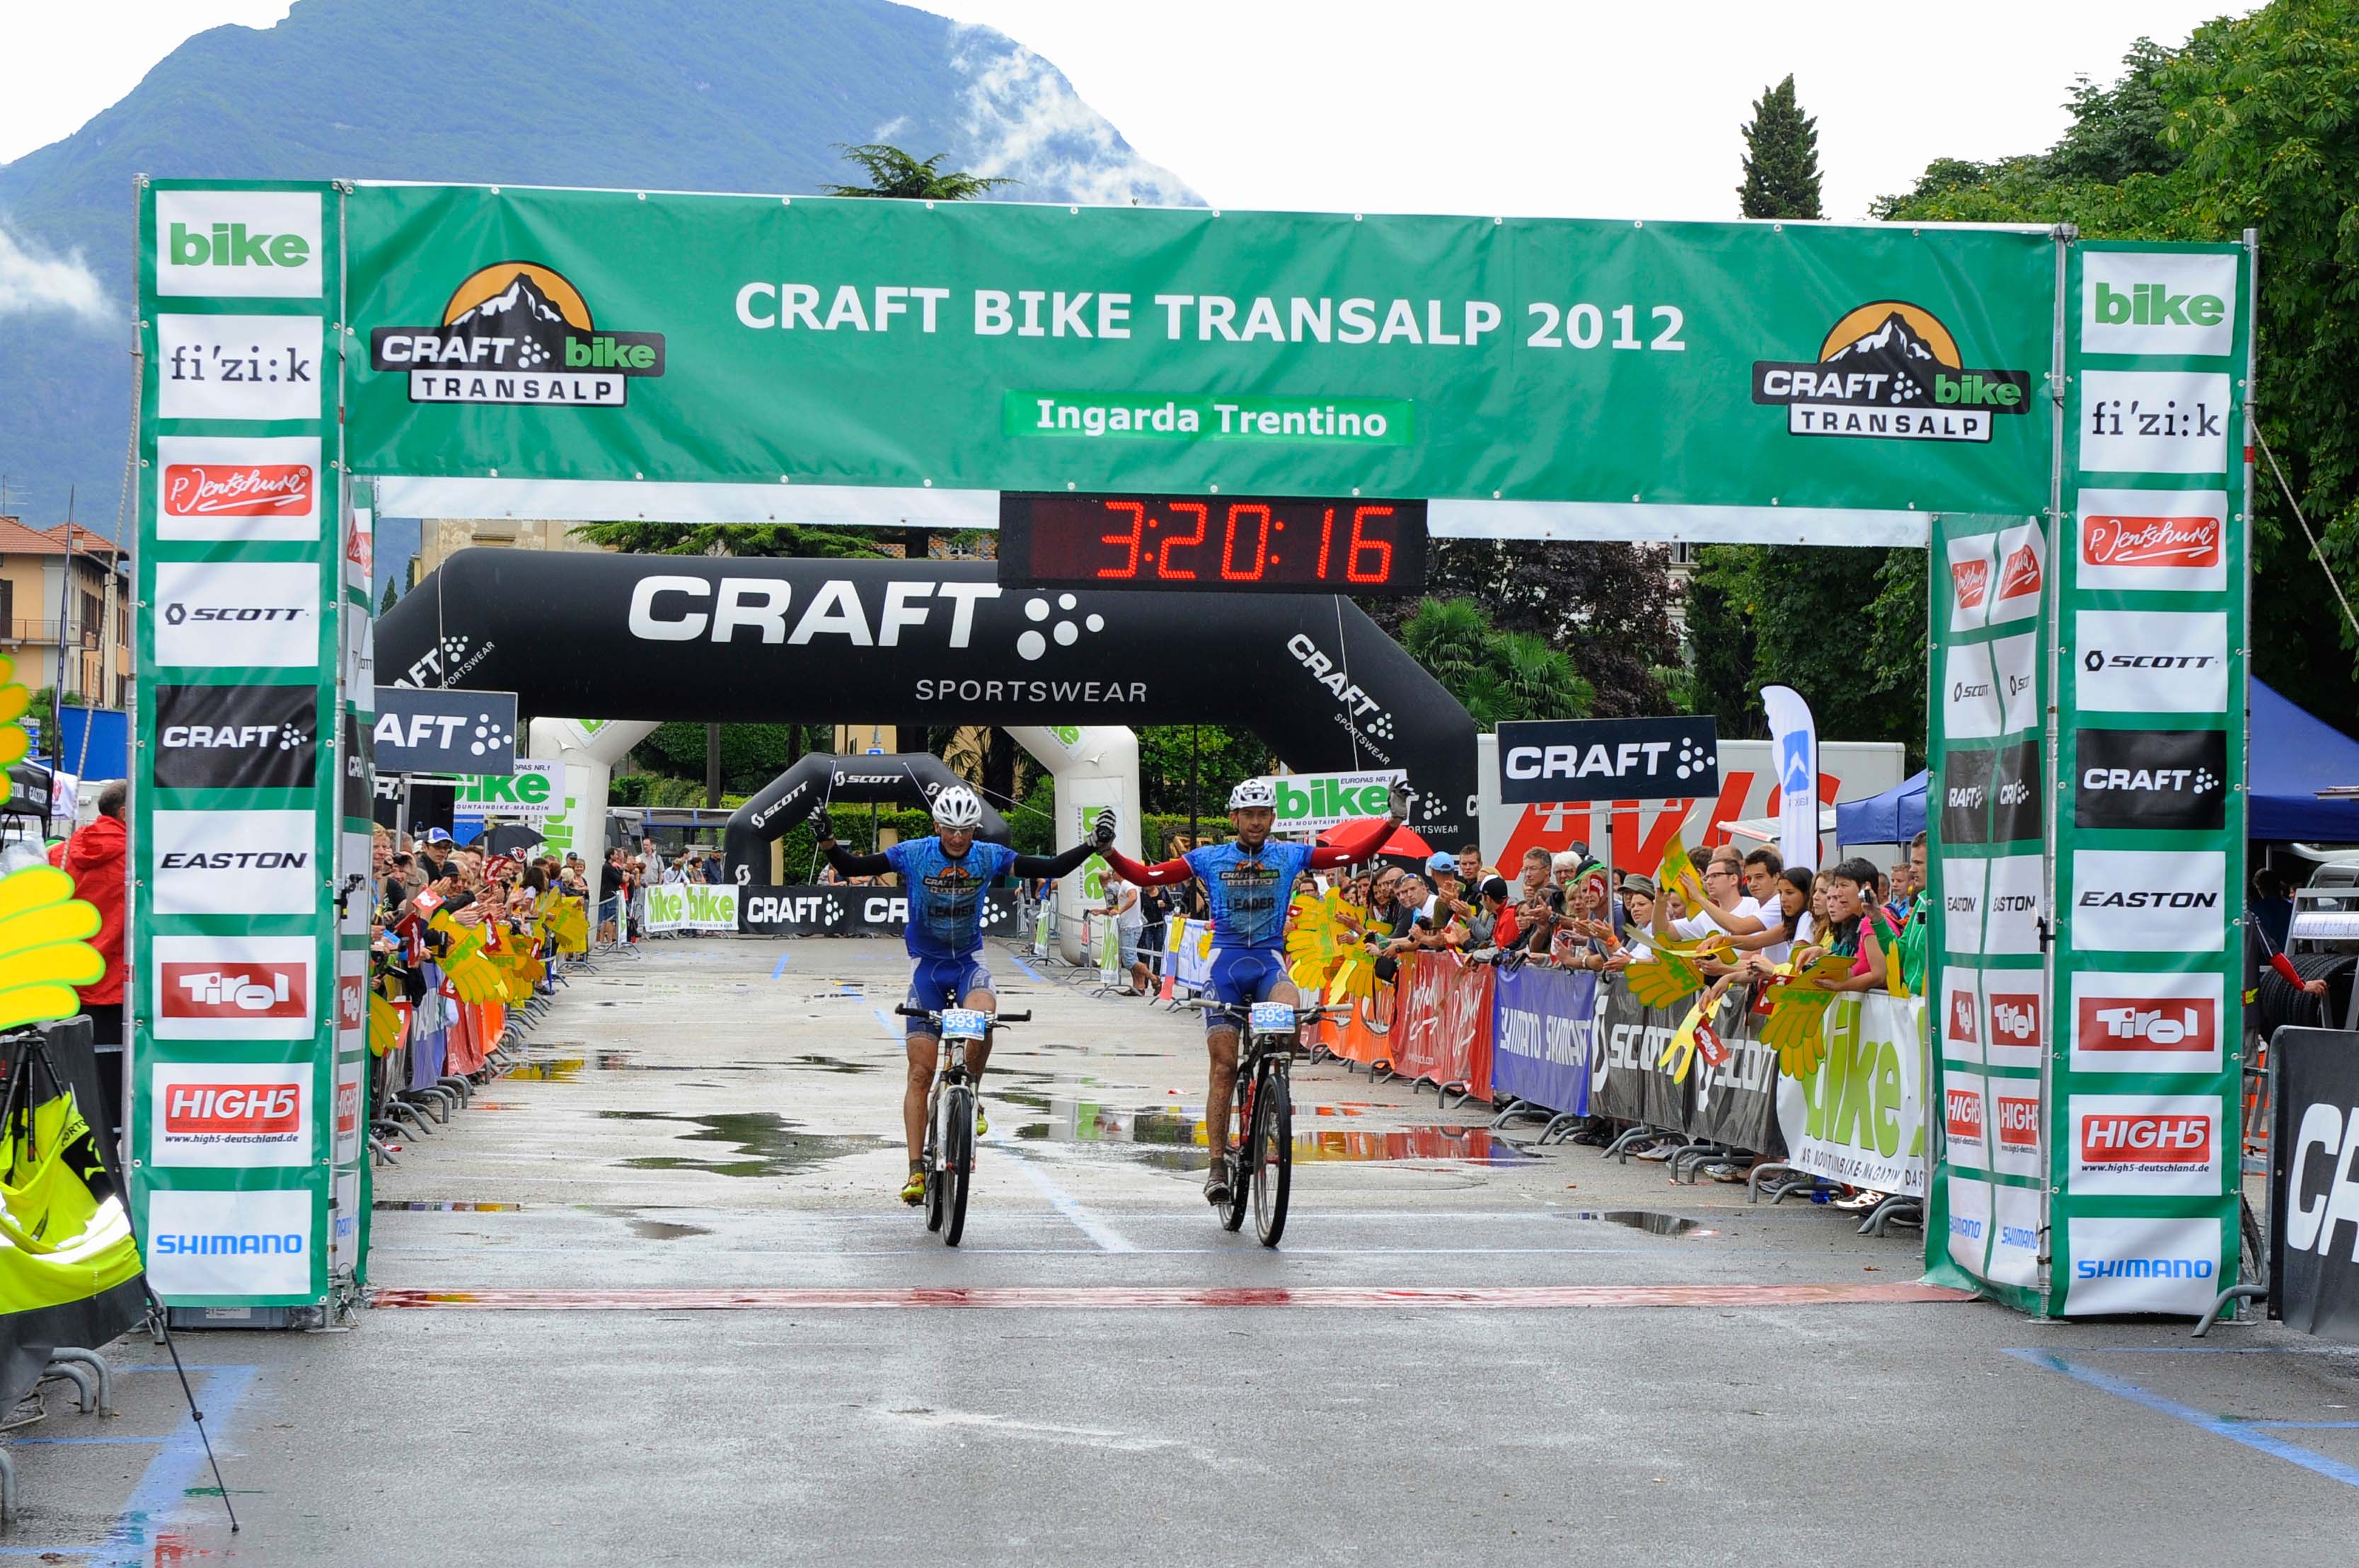 Craft Bike Transalp 2012: tappa finale a Riva del Garda. Le classifiche